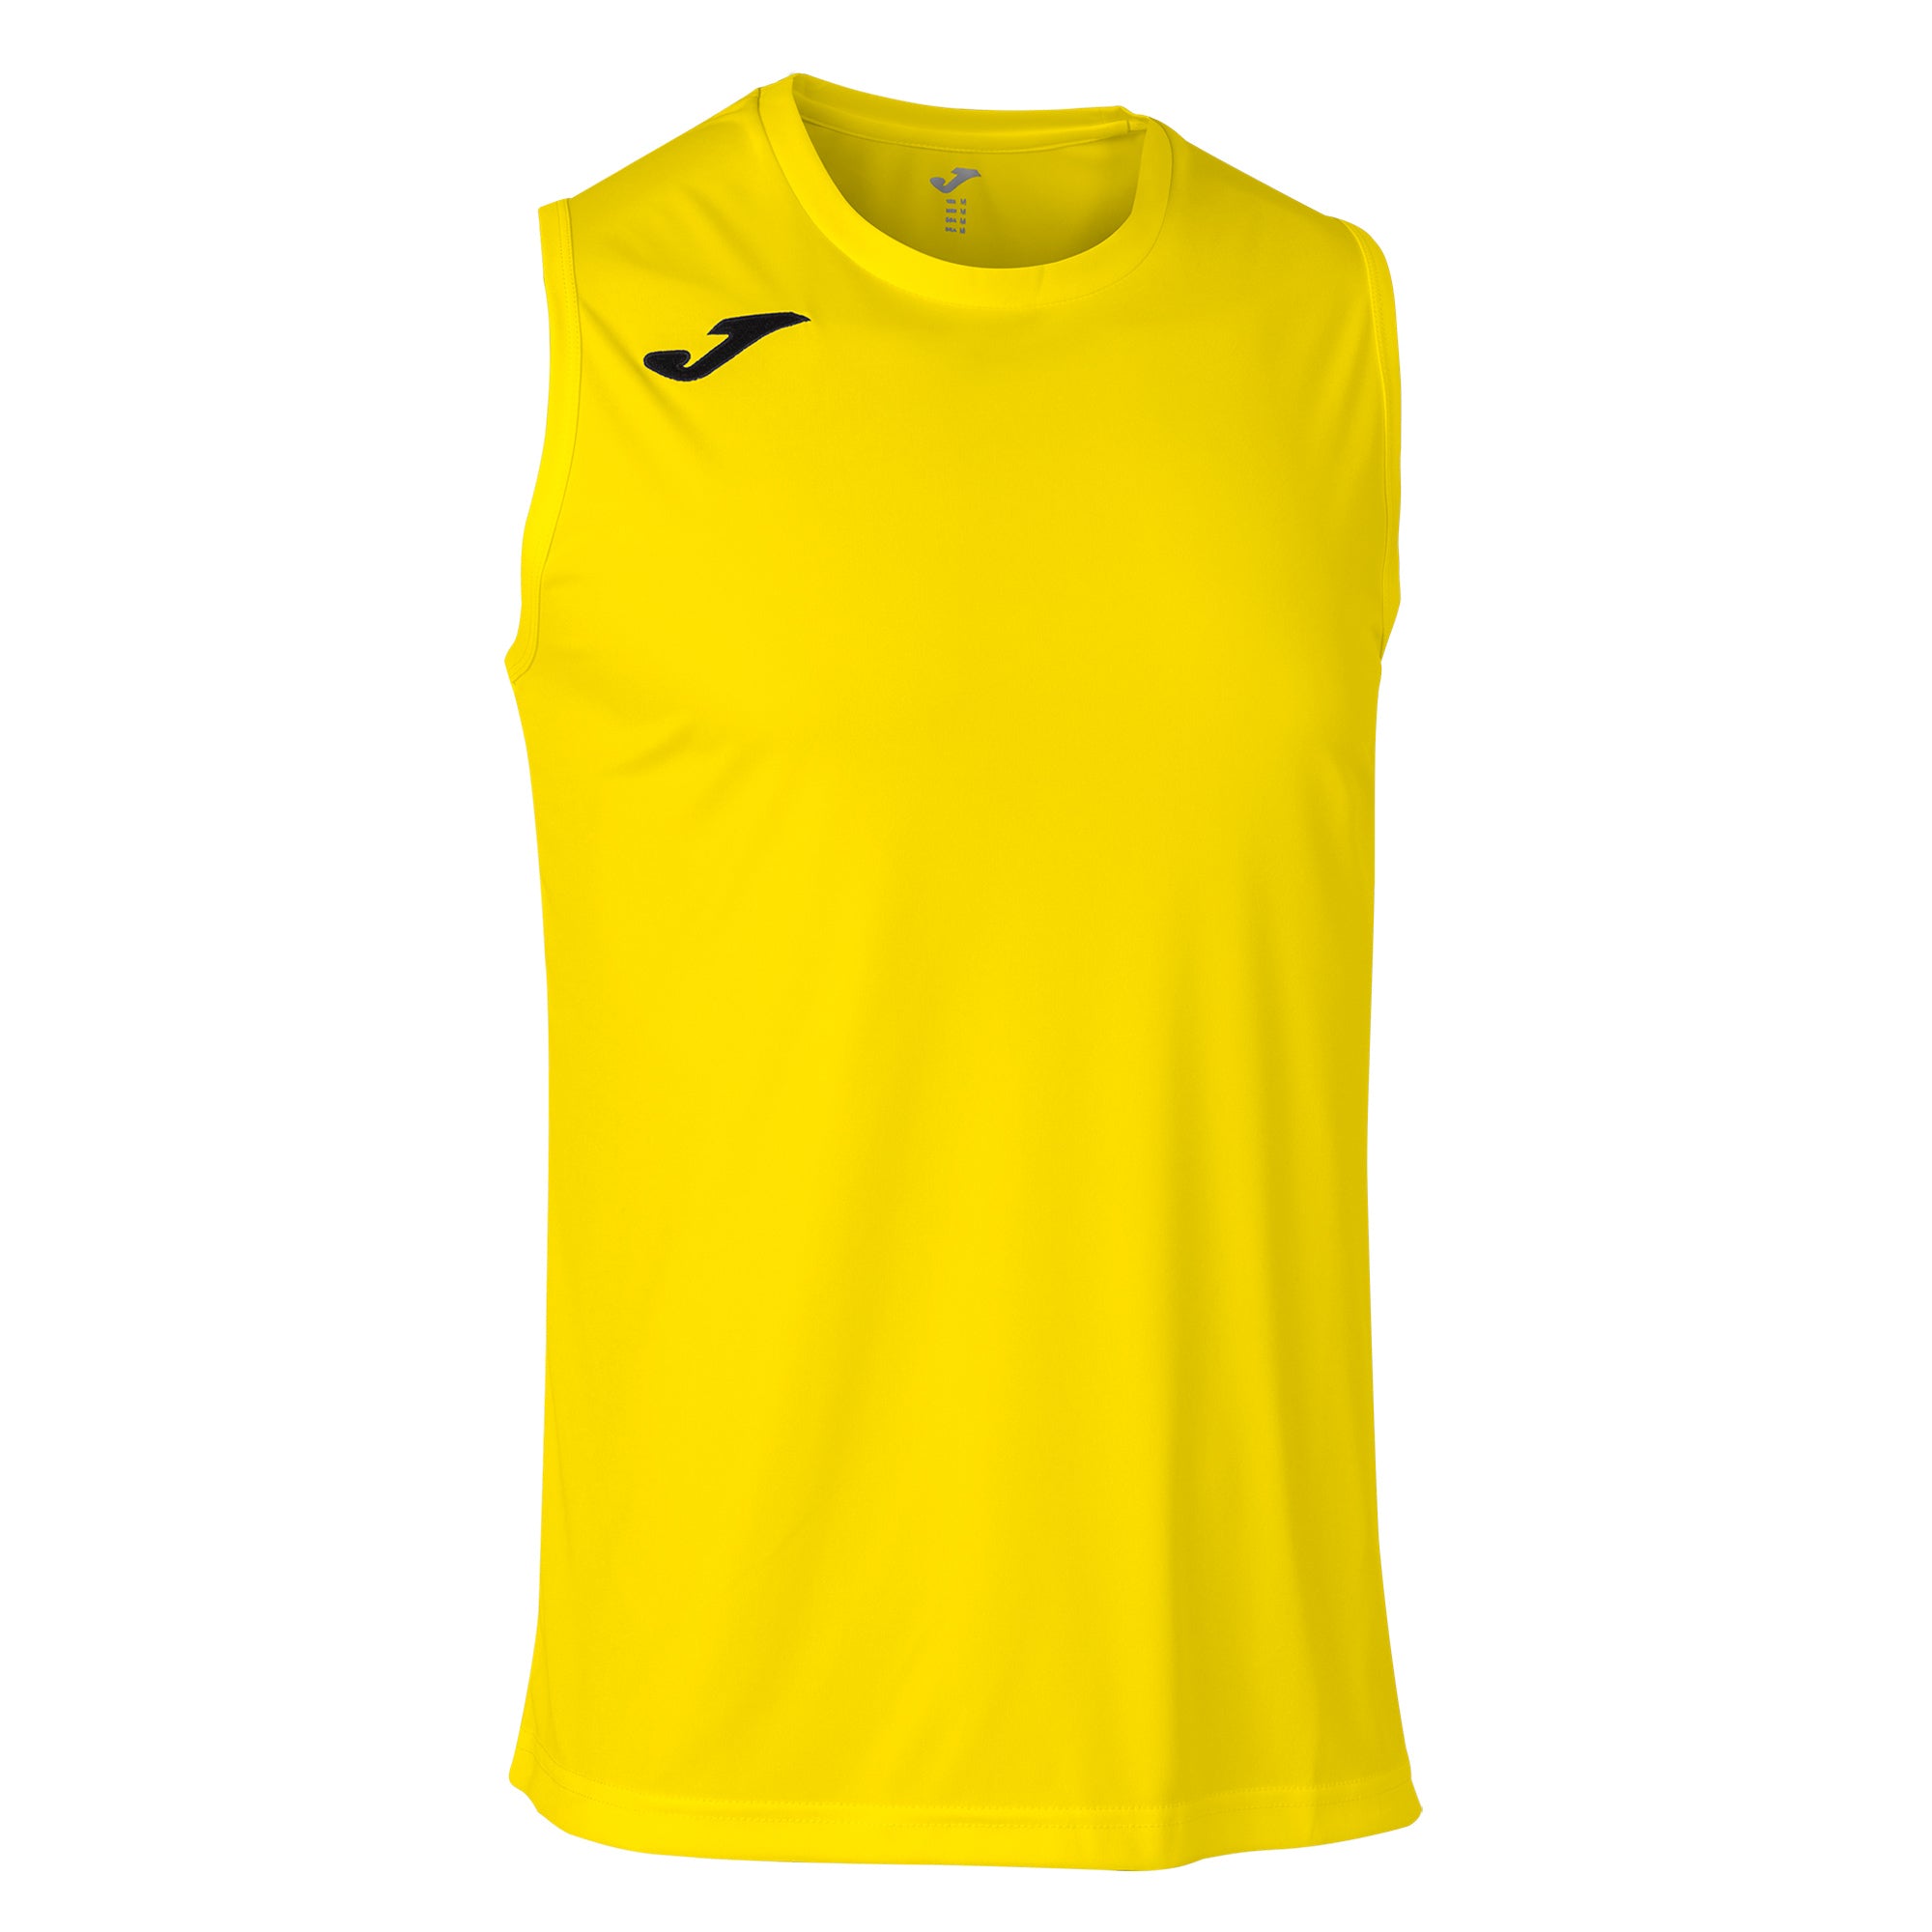 Teamwear - Joma Combi Sleeveless - Yellow - JO-101660-900